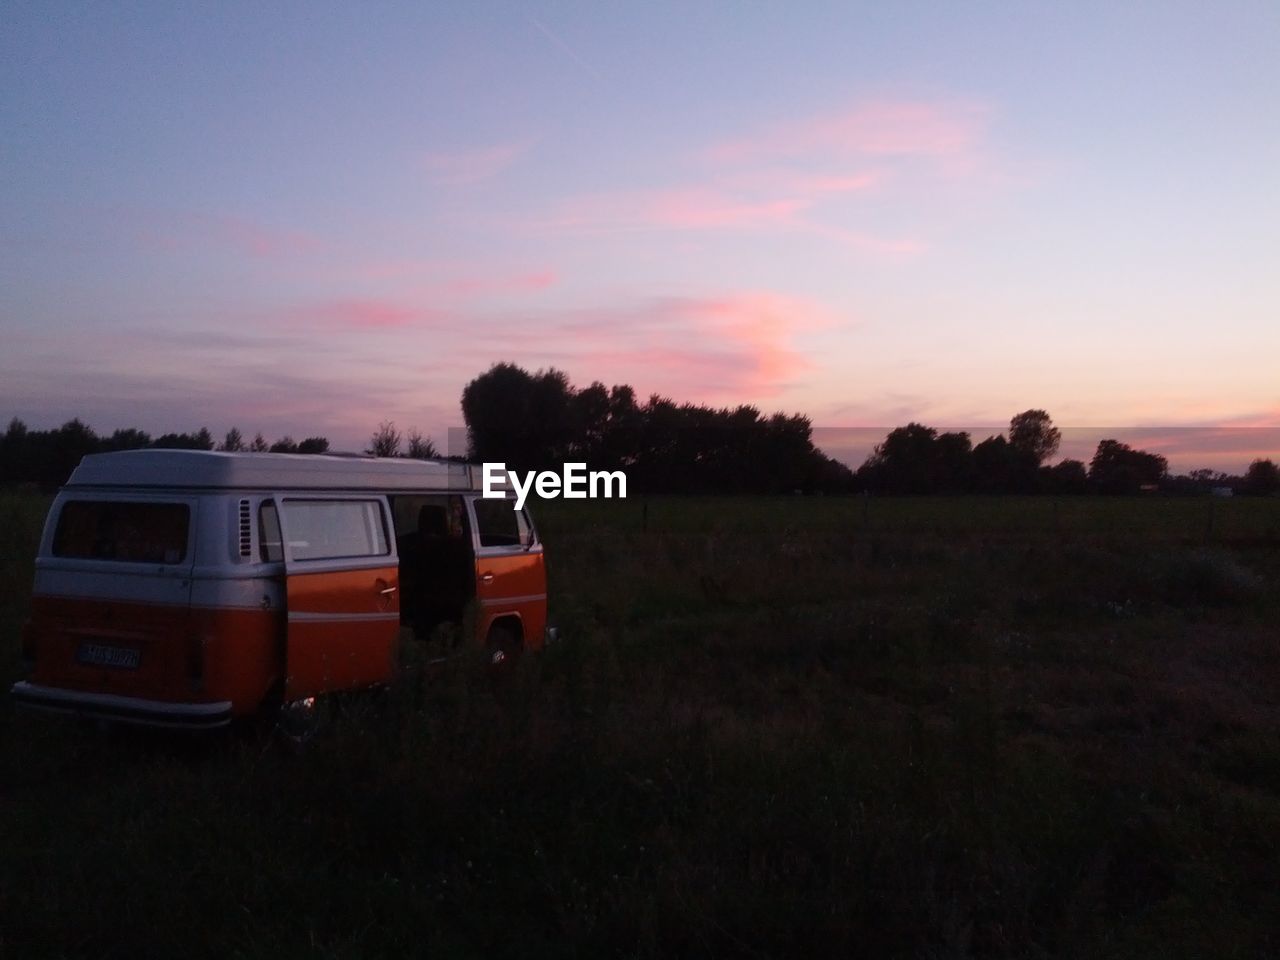 Van on grassy field at sunset